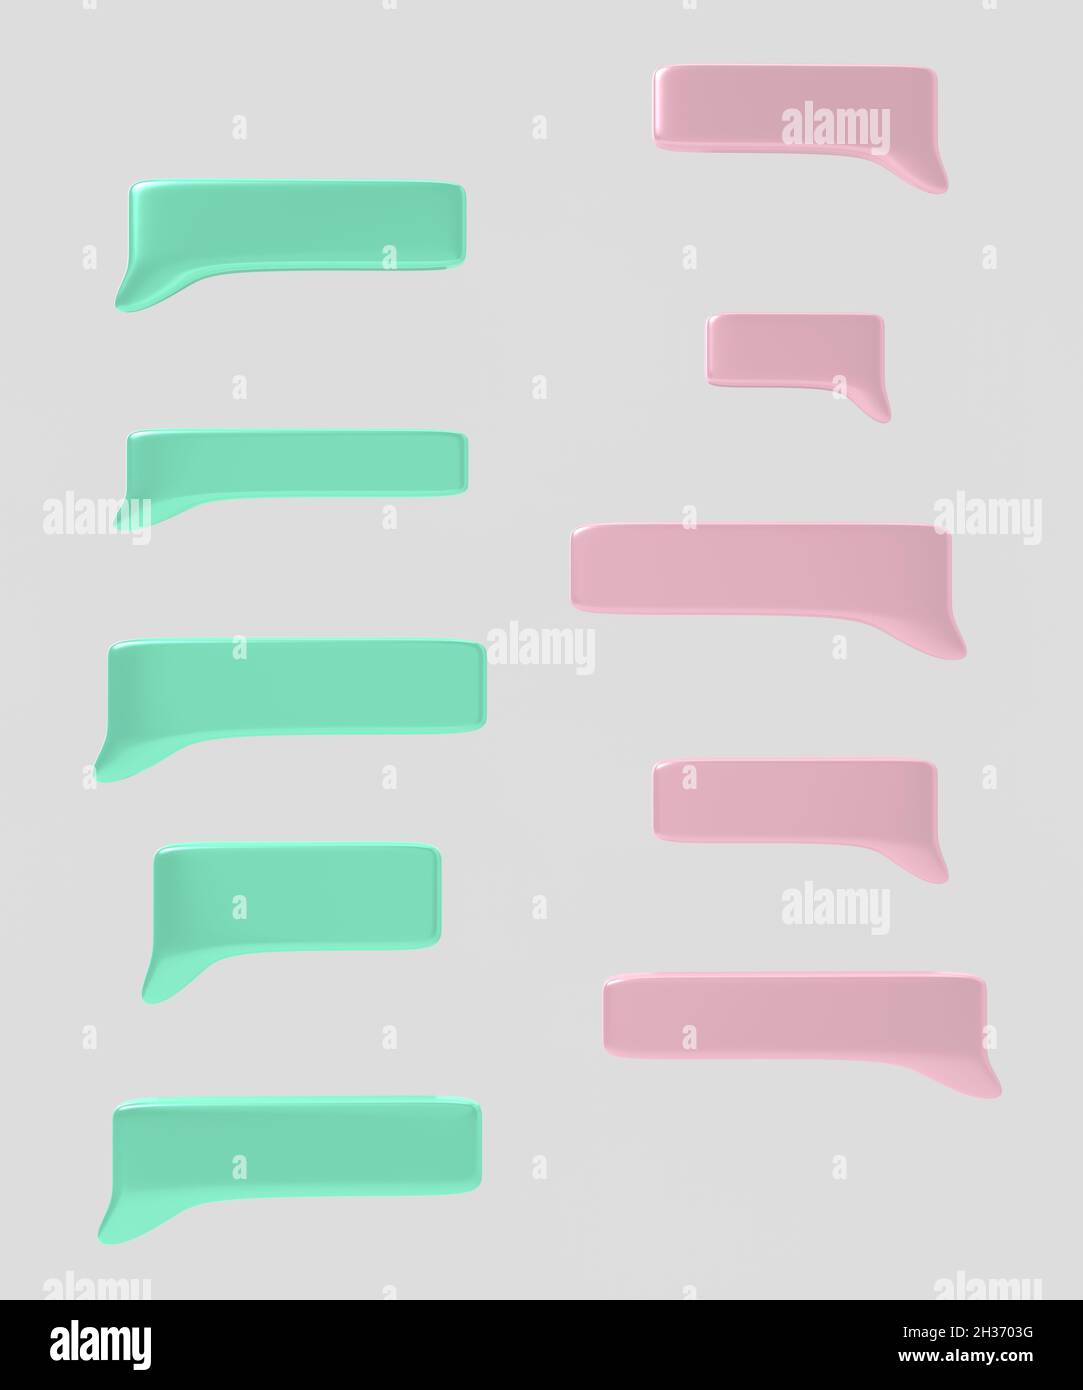 Bulle de dialogue de couleur rose et bleue isolée sur fond blanc. Illustration 3D. Banque D'Images